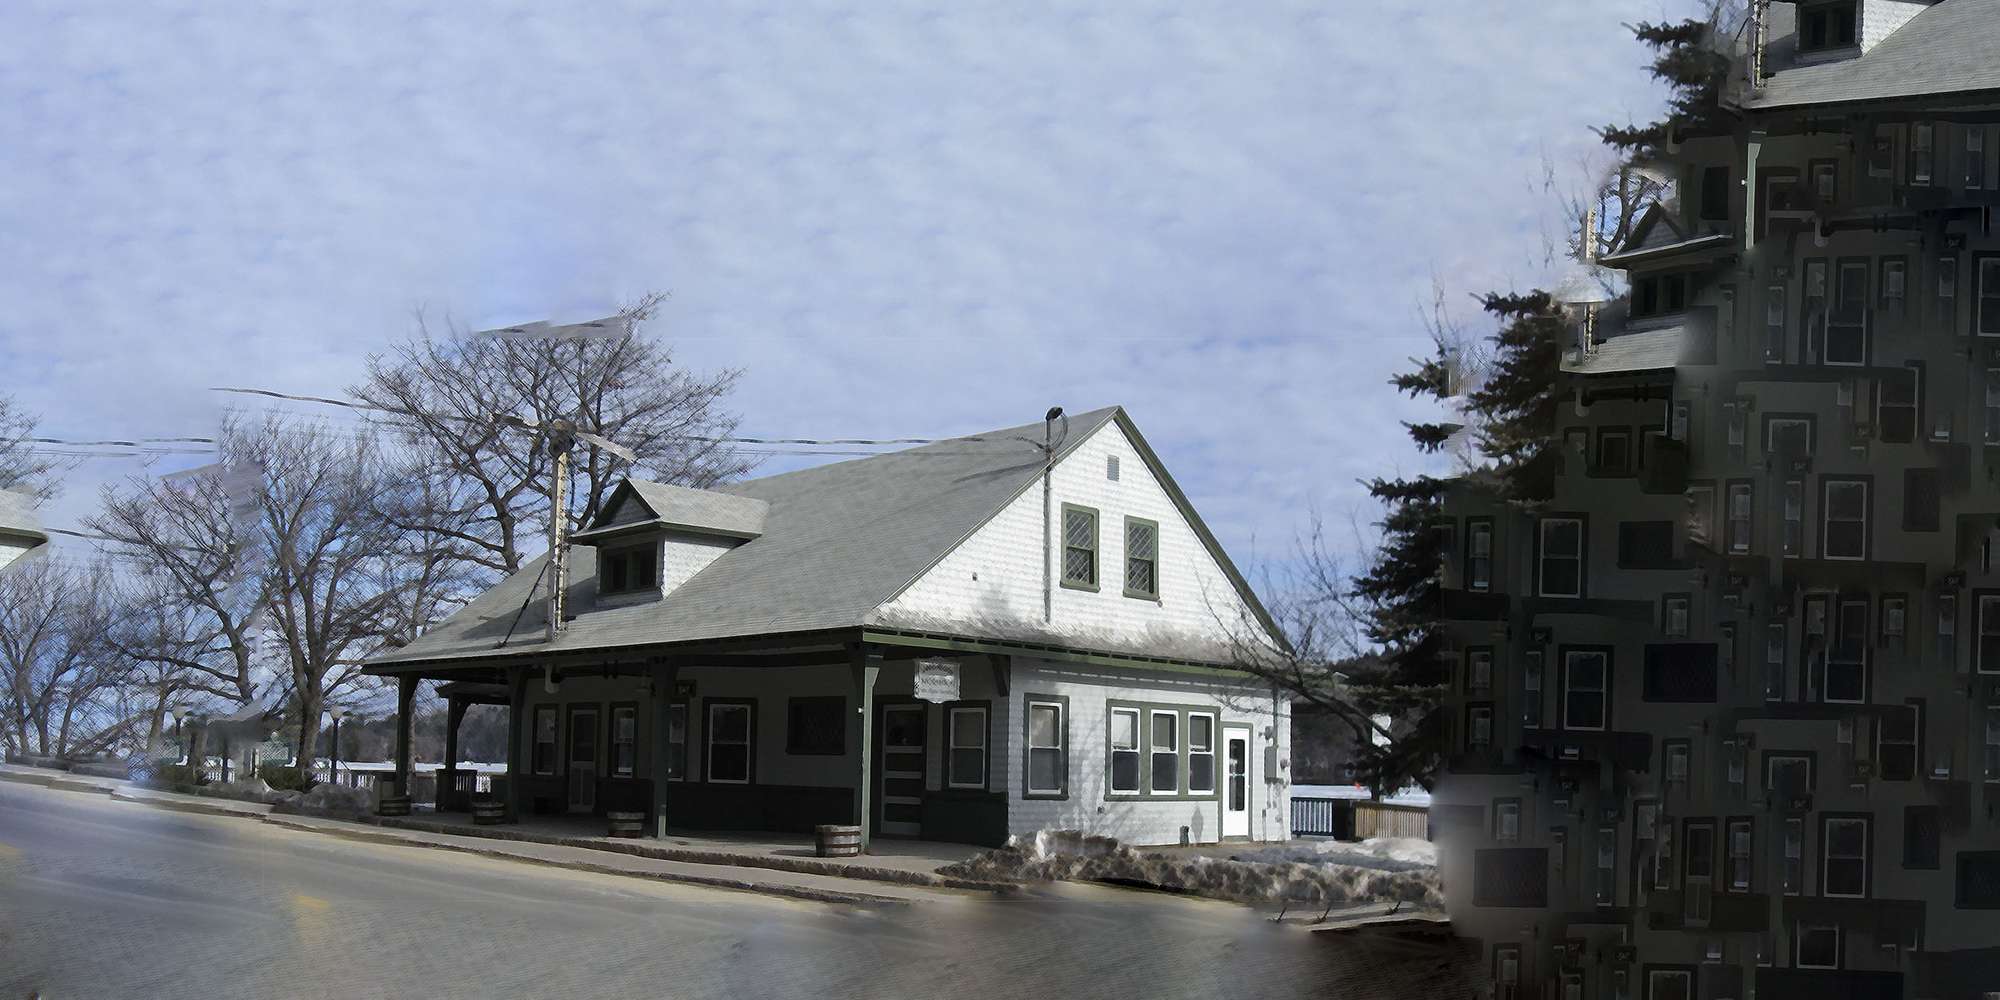 Photo of Alton Bay Railroad Station in Alton Bay, New Hampshire